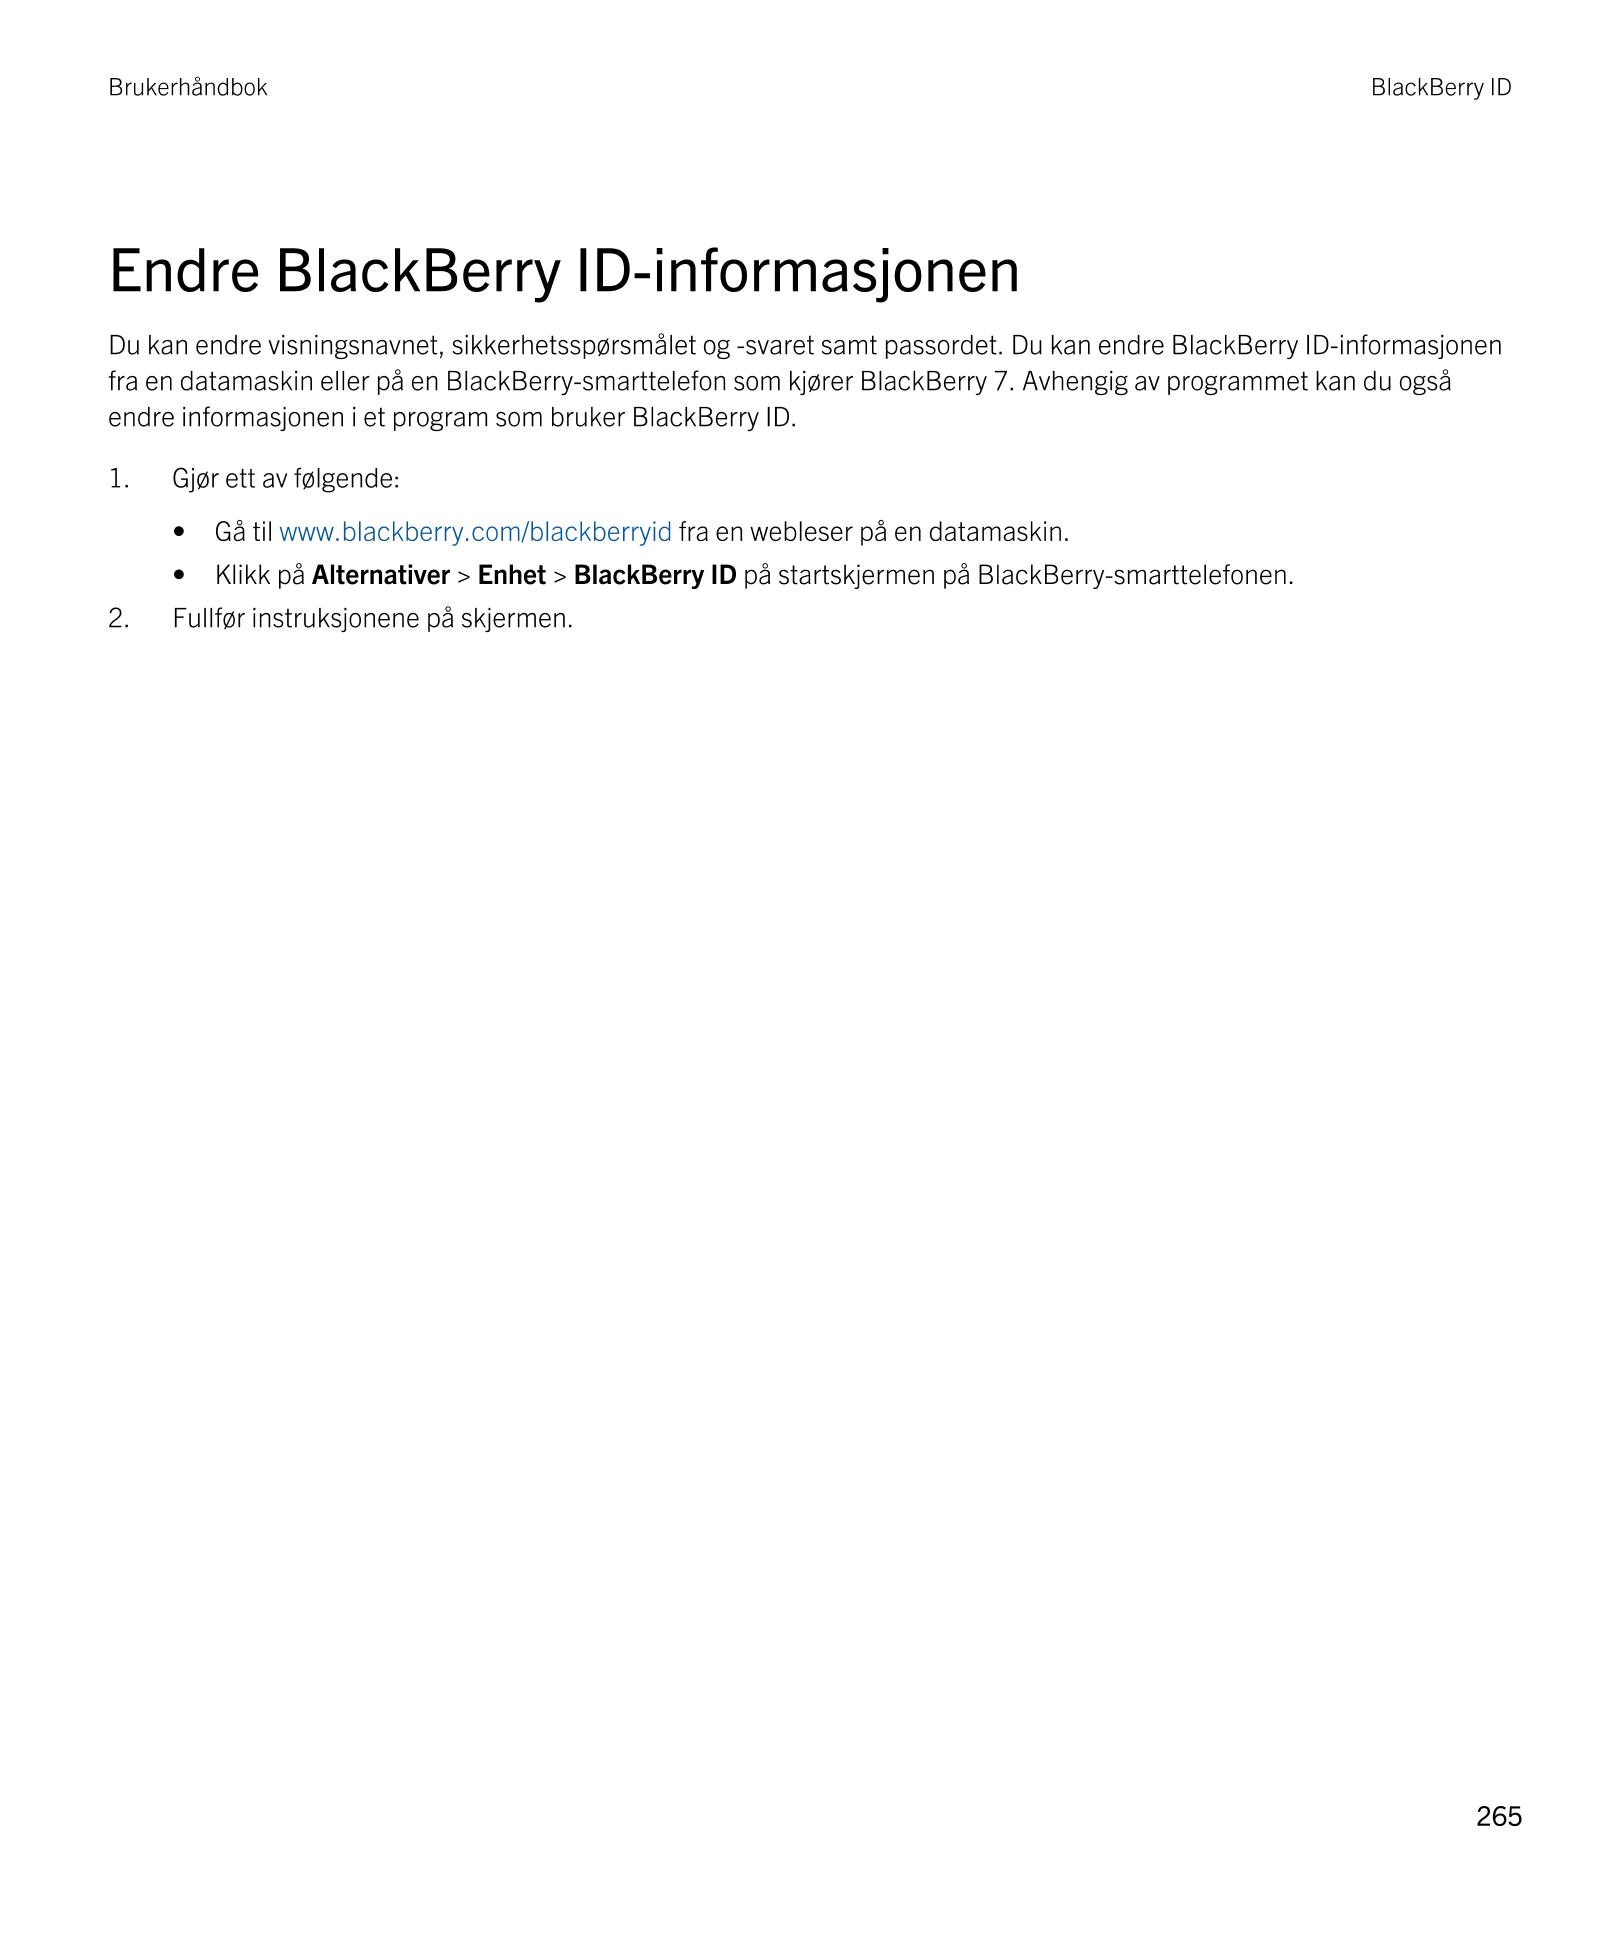 Brukerhåndbok BlackBerry ID 
Endre  BlackBerry ID-informasjonen
Du kan endre visningsnavnet, sikkerhetsspørsmålet og -svaret sam